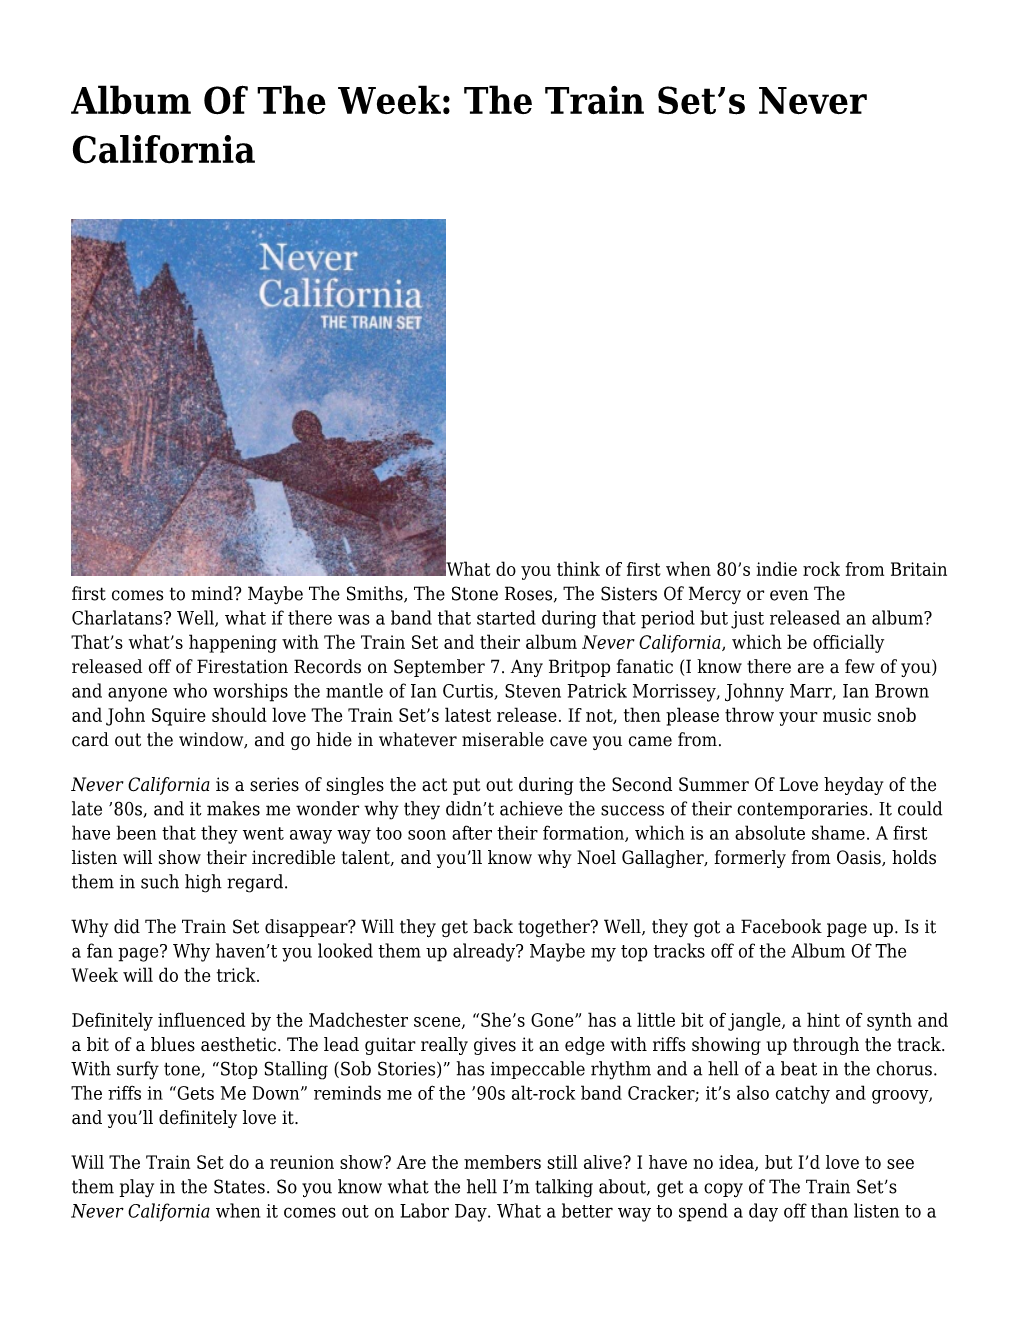 S Never California,CD Review: Adam Michael